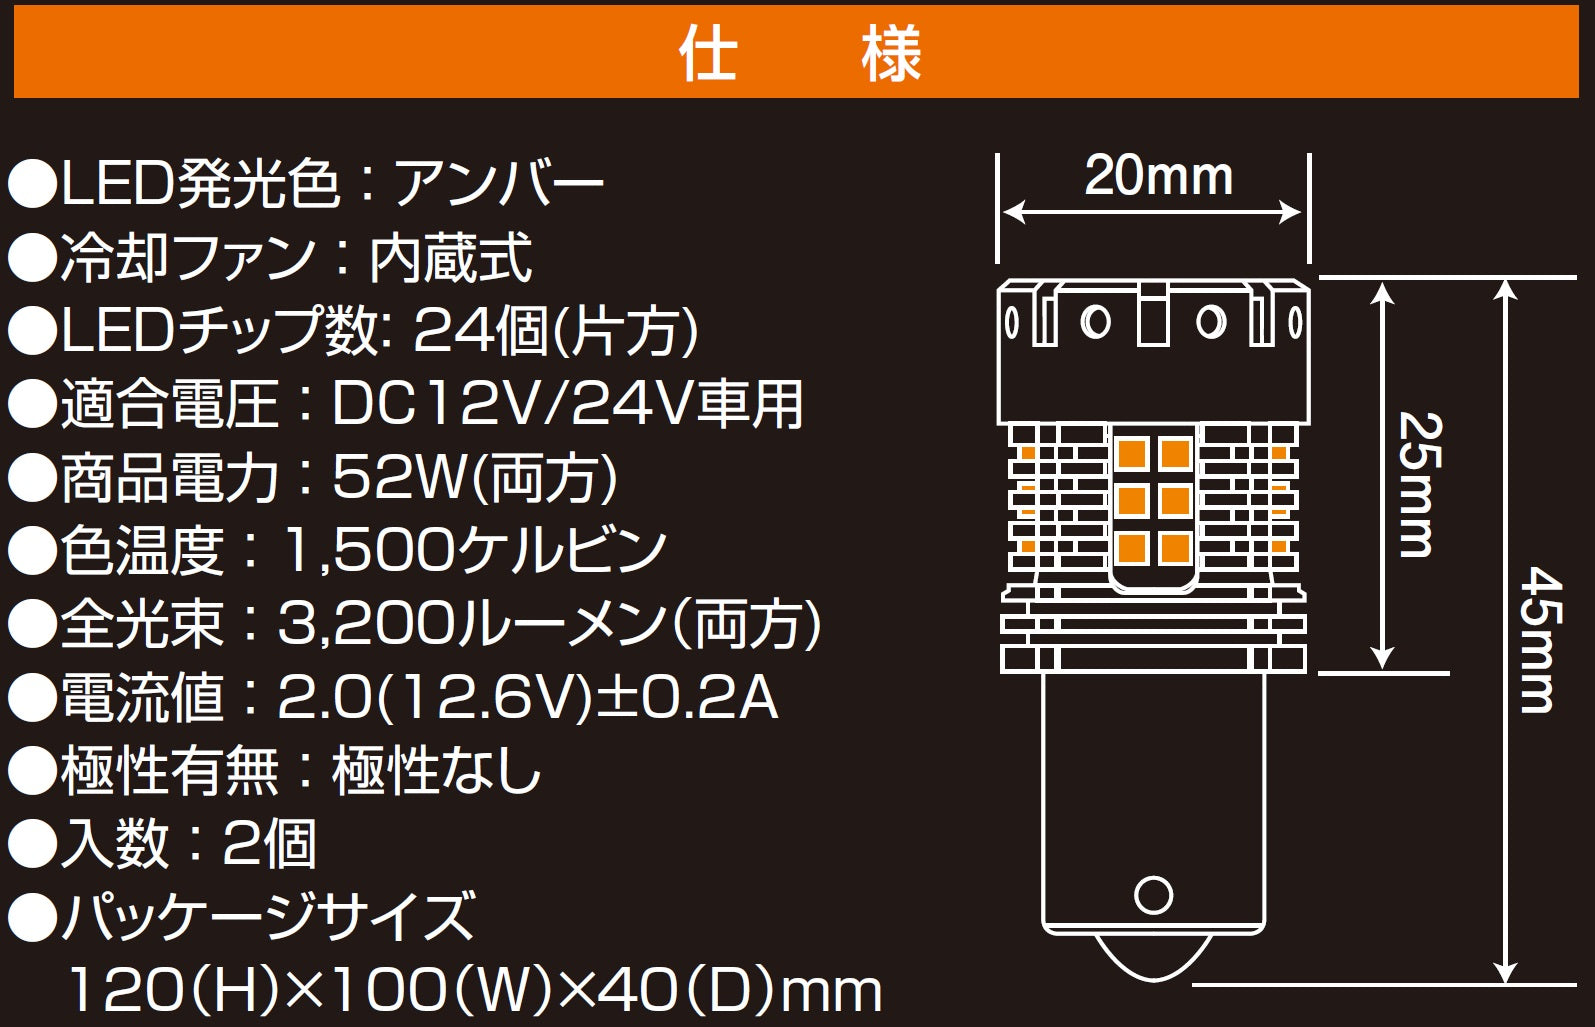 【LSL-961】 JB激光LEDウィンカーバルブ 角度ピンタイプ アンバー 2個入... 日本ボデーパーツ工業